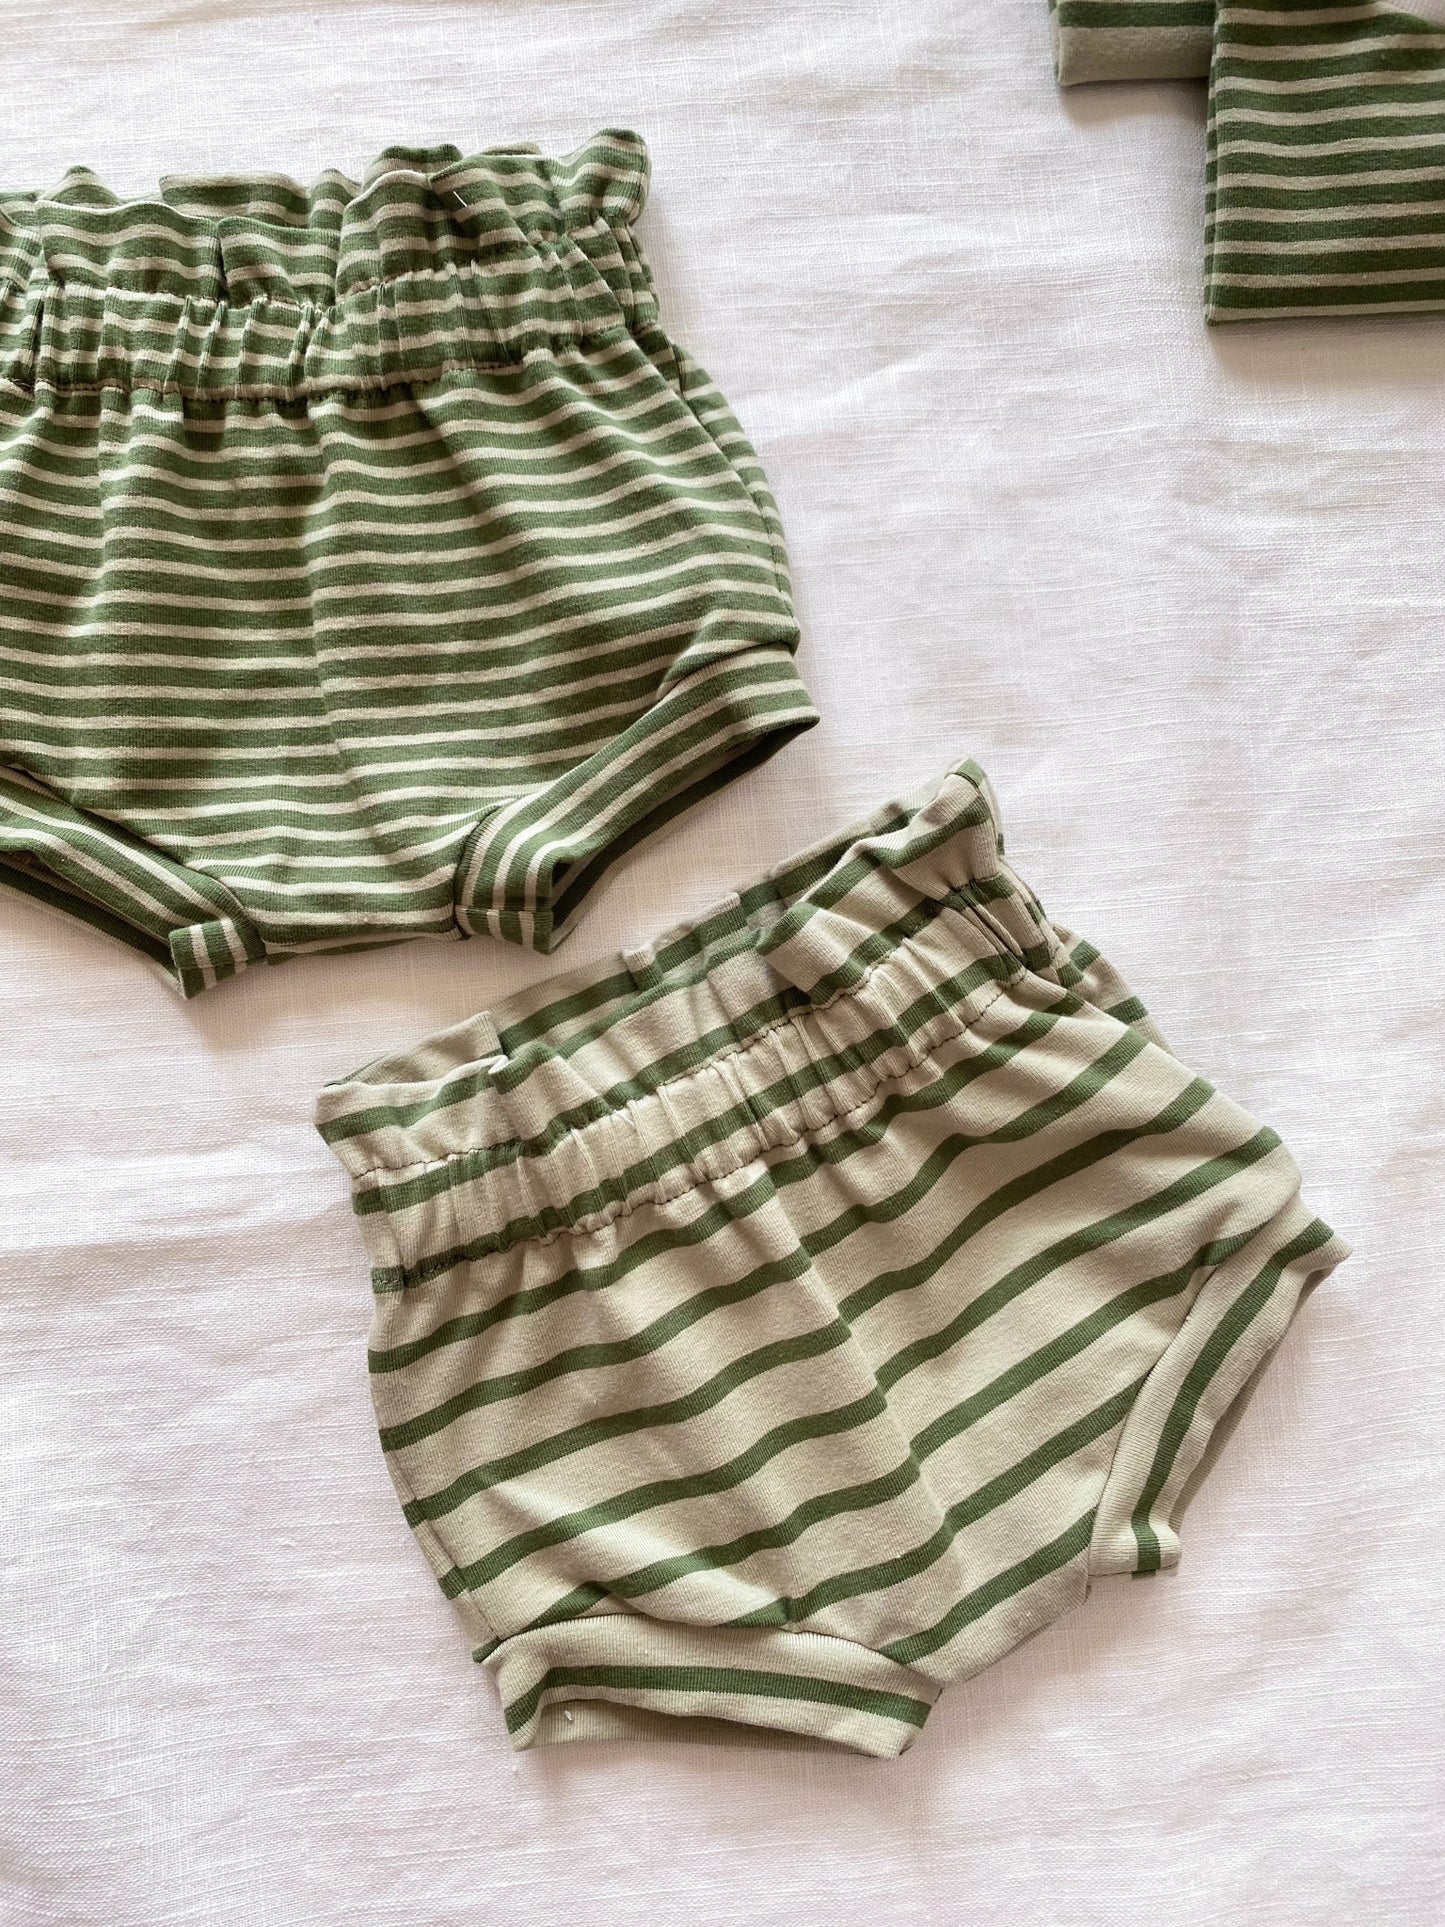 Girly ruffle shorts / olive stripes